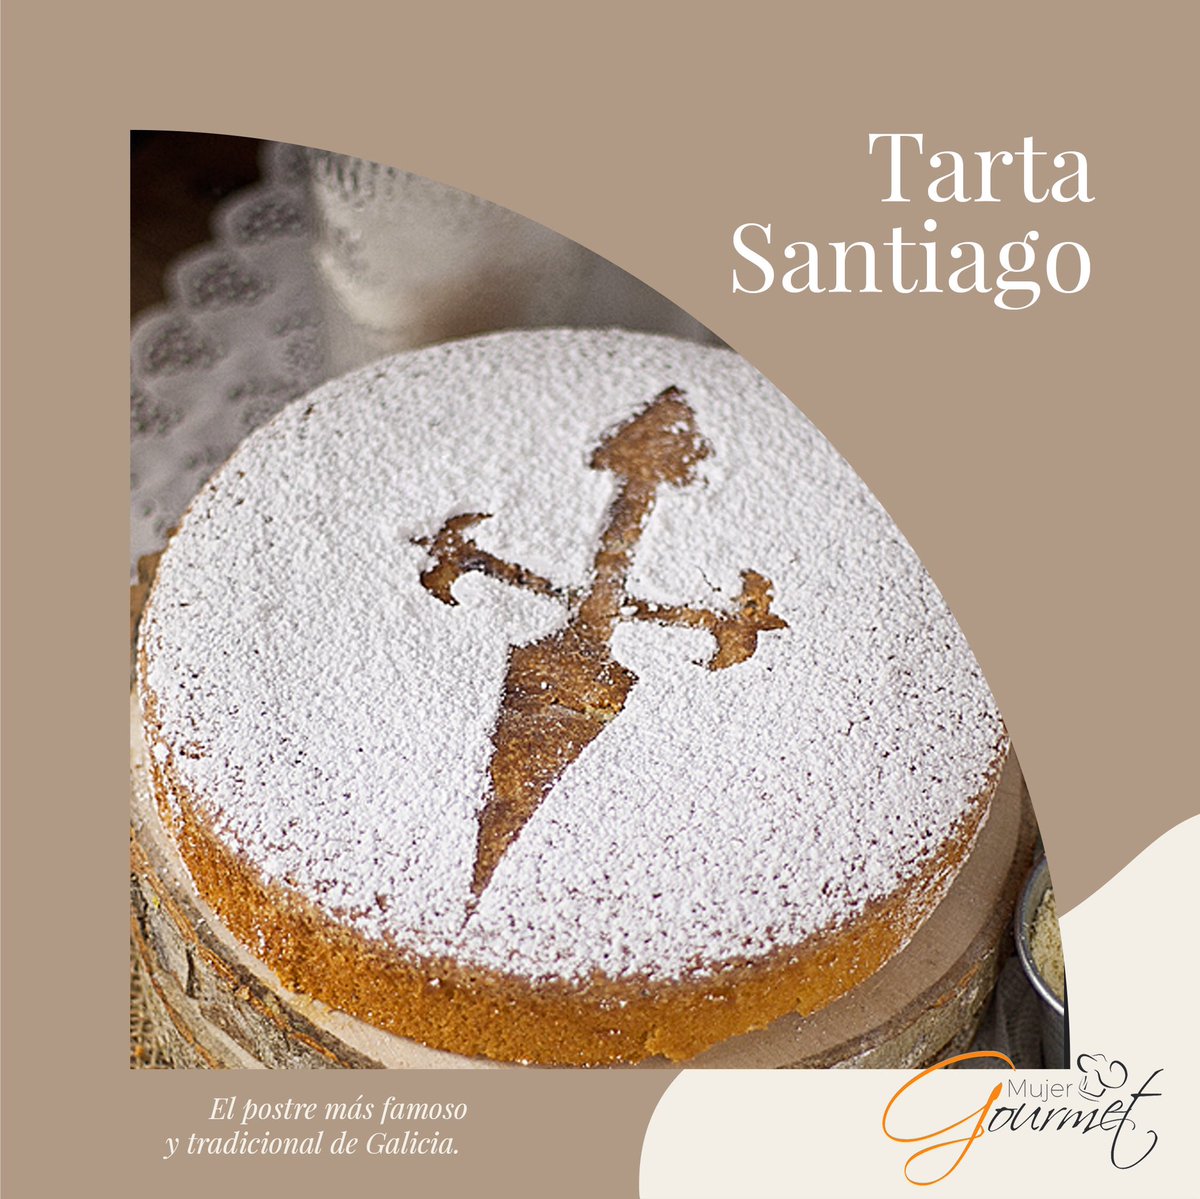 Disfruta el delicioso sabor del postre más famoso de #Galicia con nuestra receta original.

mujer.com.mx/recipe/tarta-s…

#TartaSantiago 👇🏻